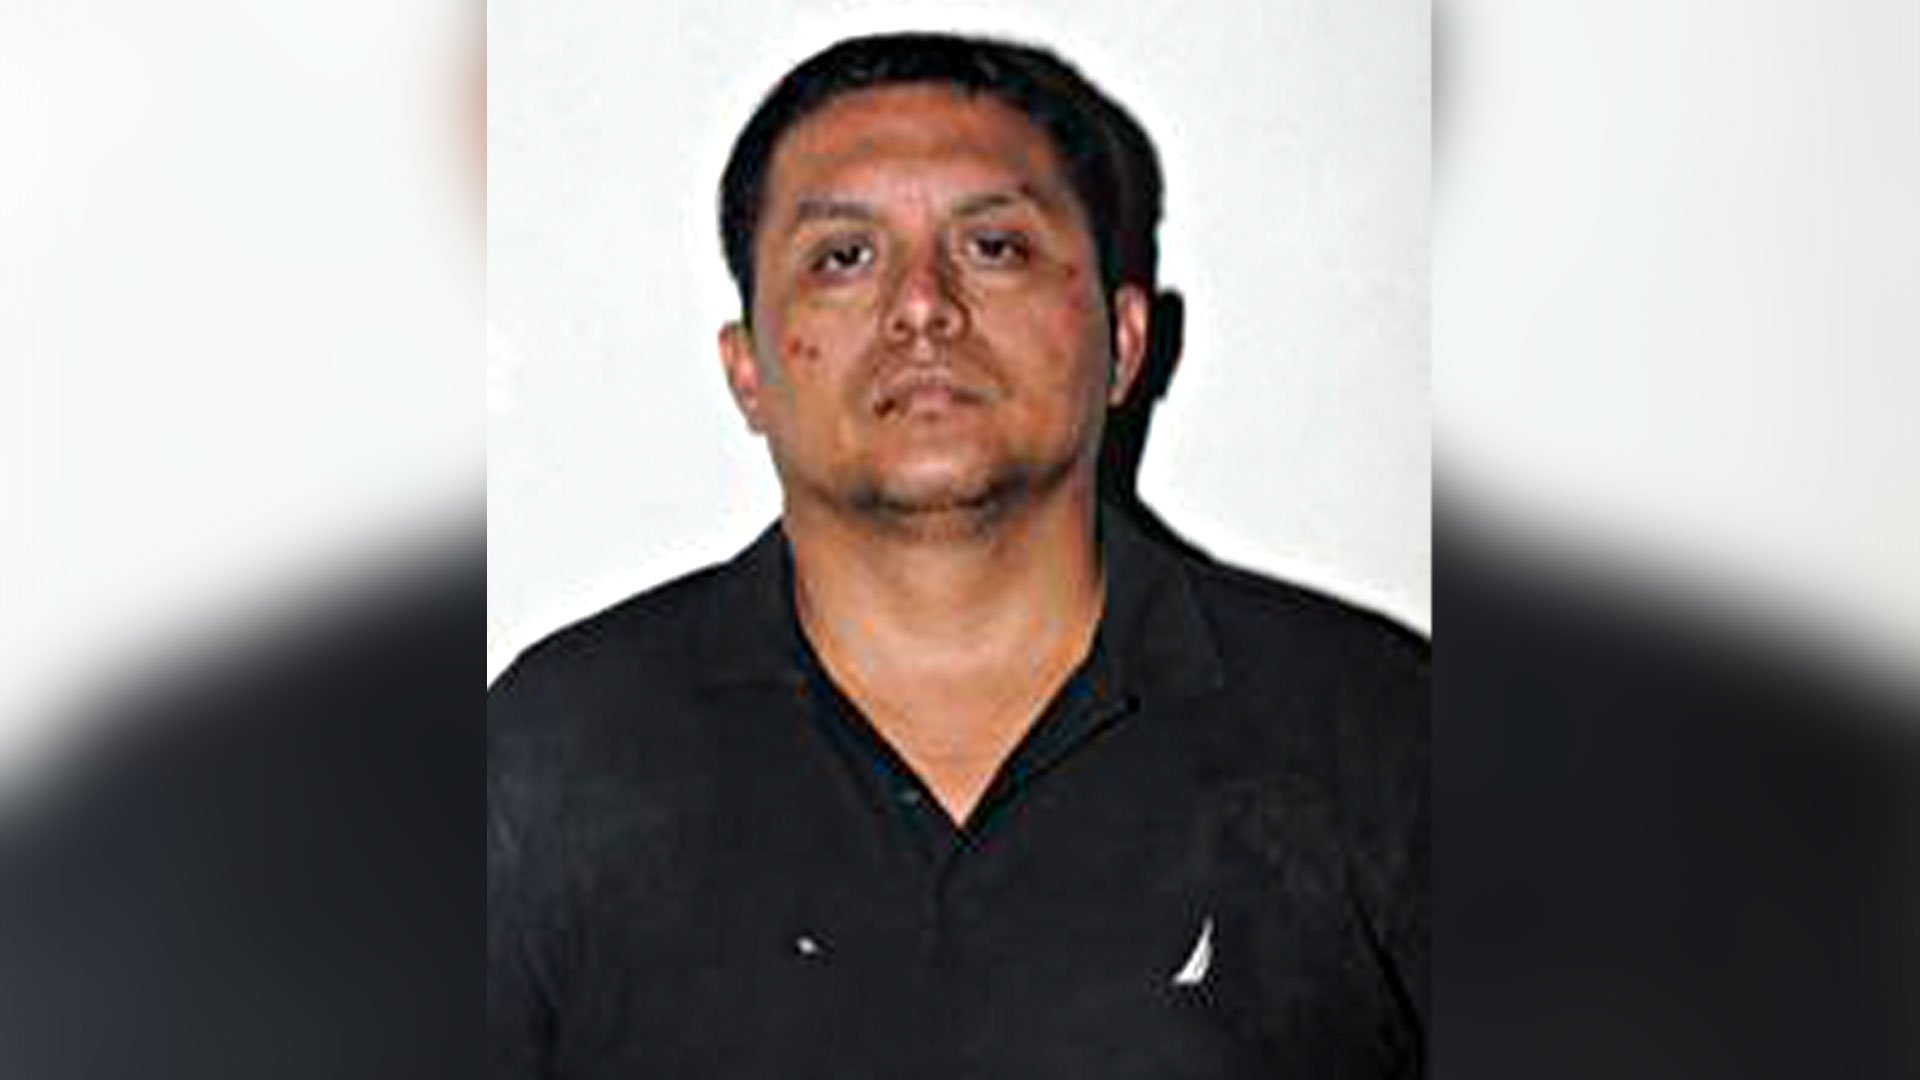 Zetas - Capturan a Miguel Ángel Treviño, ‘El Z-40’, líder de Los Zetas: The Dallas Morning News - Página 9 D62Y7J6QQVCAPKMSN3TH4RQK7I